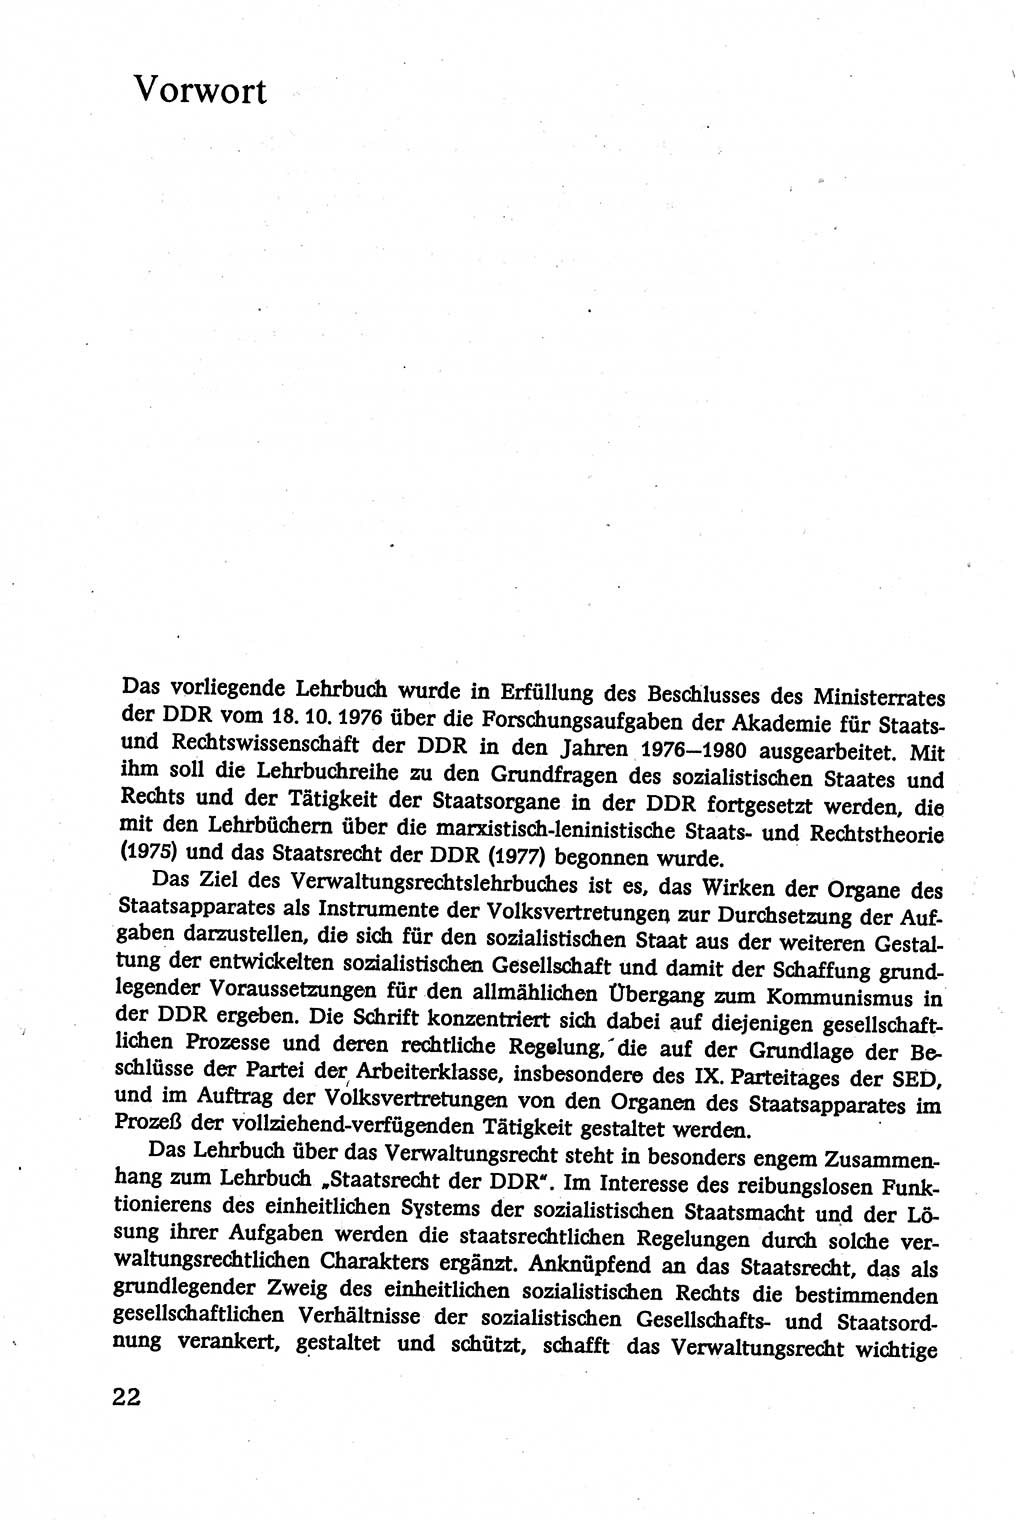 Verwaltungsrecht [Deutsche Demokratische Republik (DDR)], Lehrbuch 1979, Seite 22 (Verw.-R. DDR Lb. 1979, S. 22)